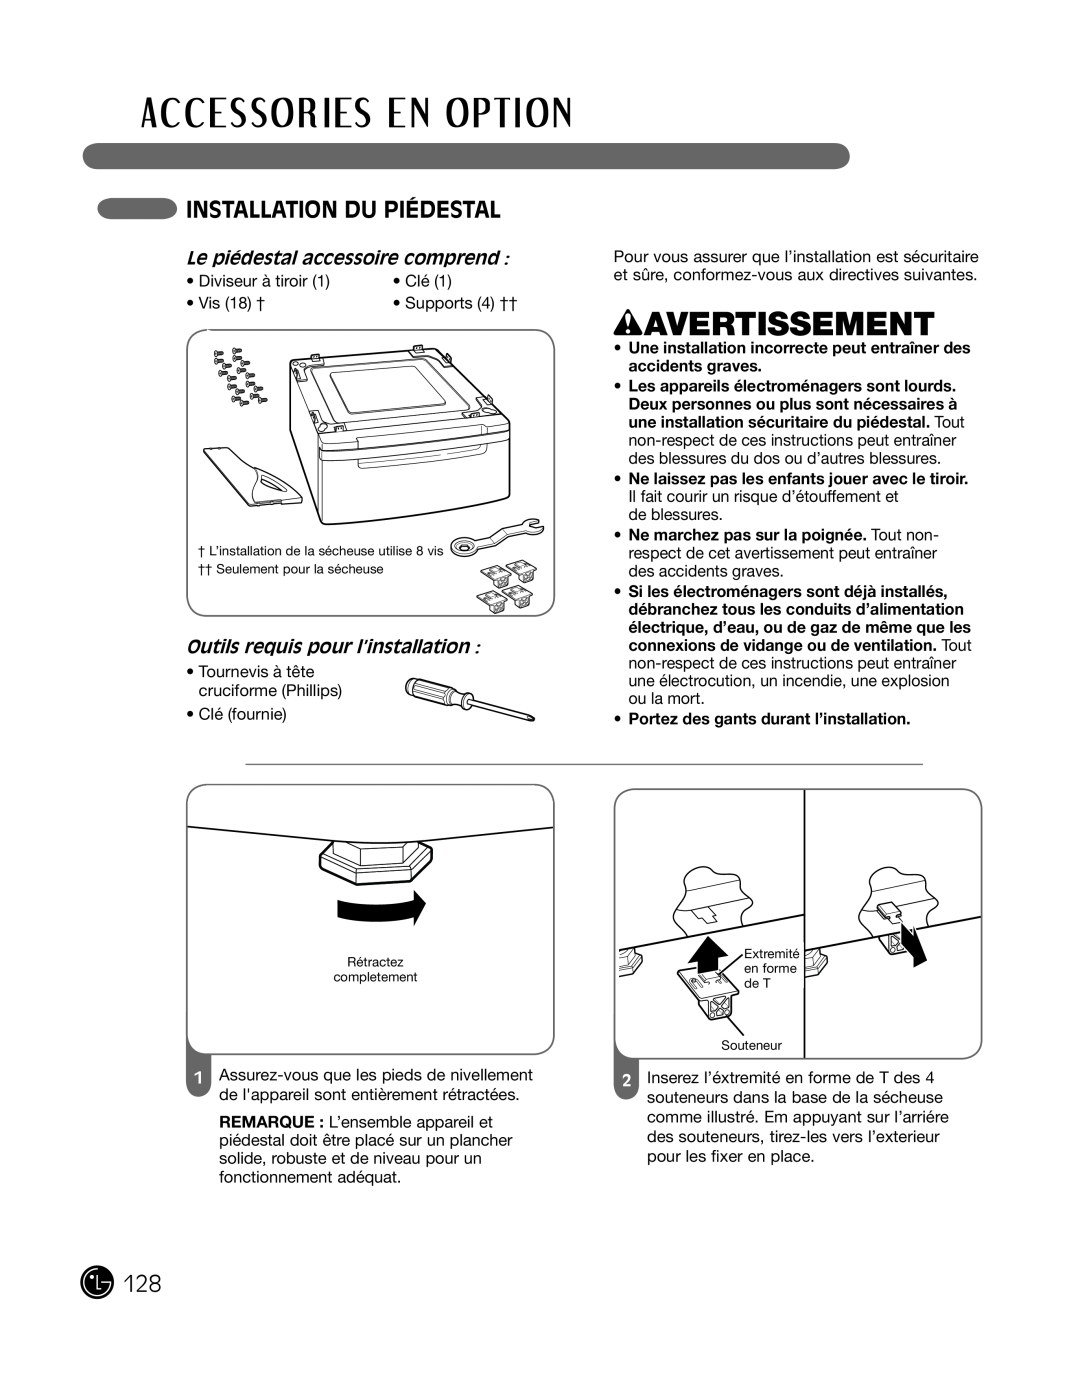 LG Electronics P154 manual instaLLation du piédestaL, Le piédestal accessoire comprend, outils requis pour l’installation 